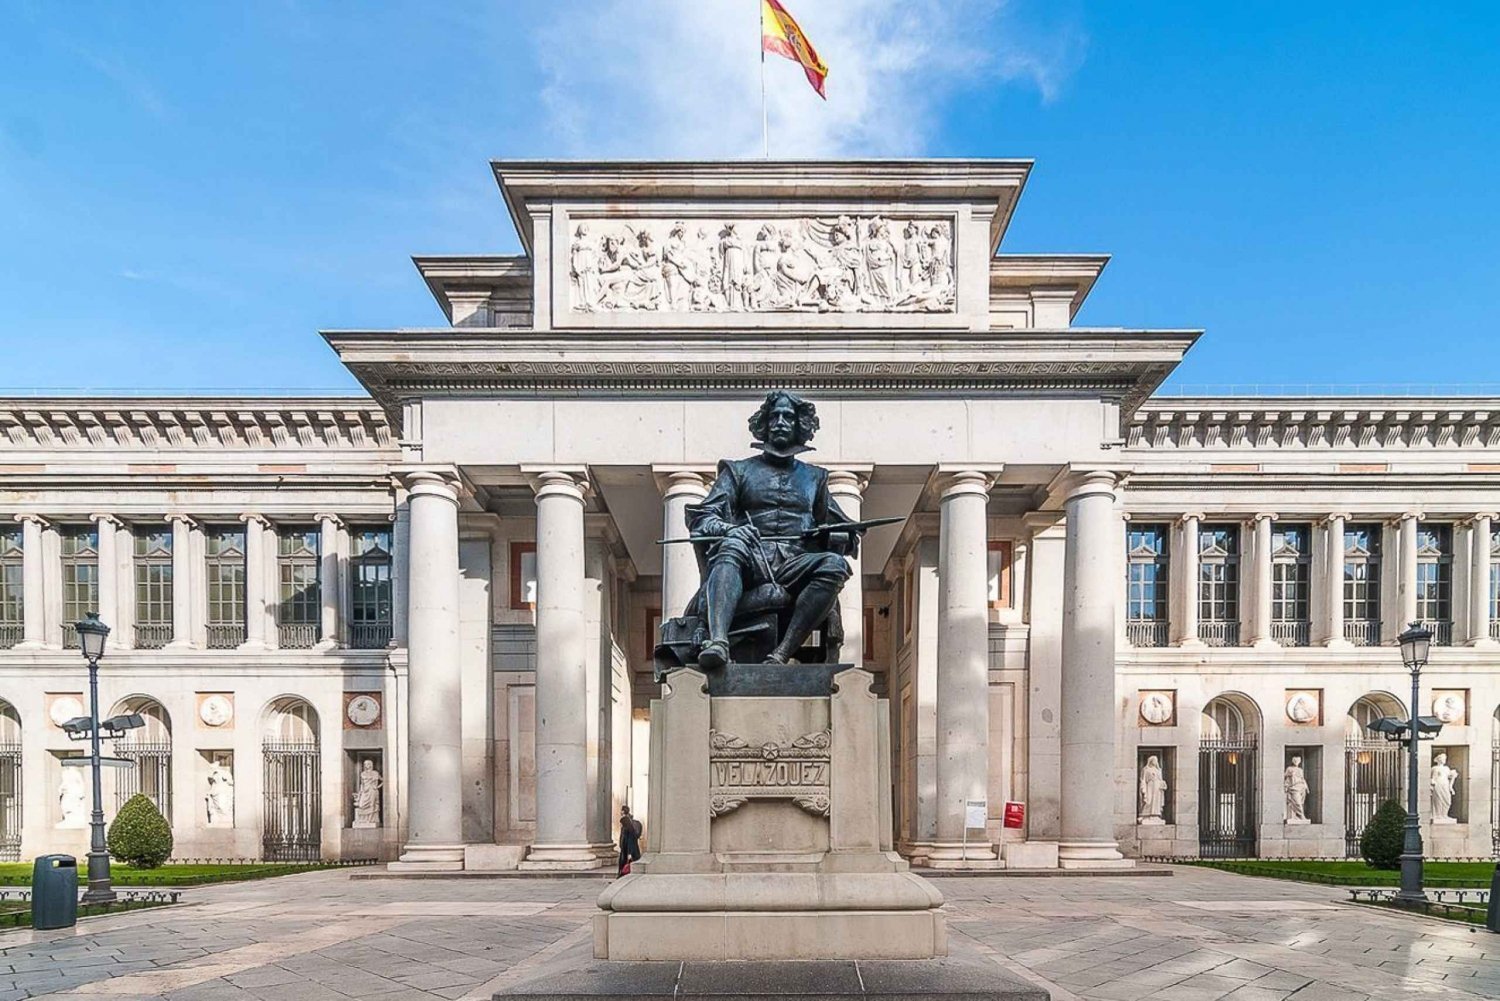 Madryt: Wycieczka piesza do Muzeum Prado i Pałacu Królewskiego